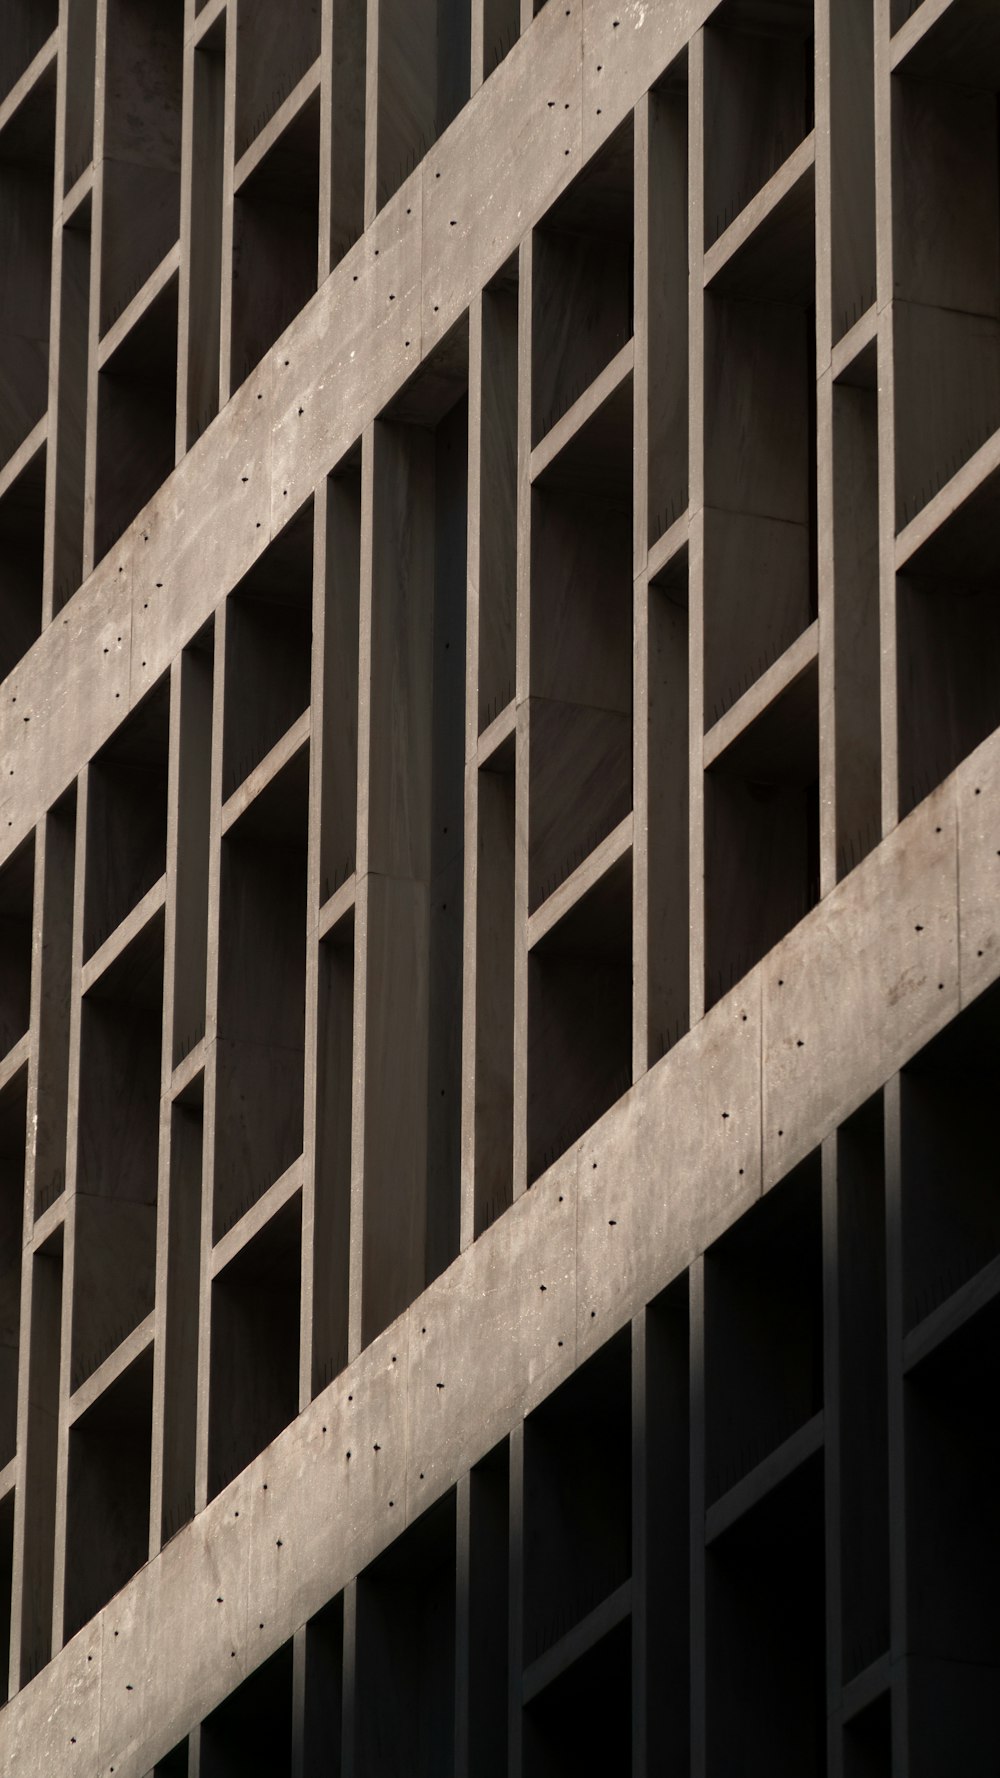 a close up of a building made of concrete blocks